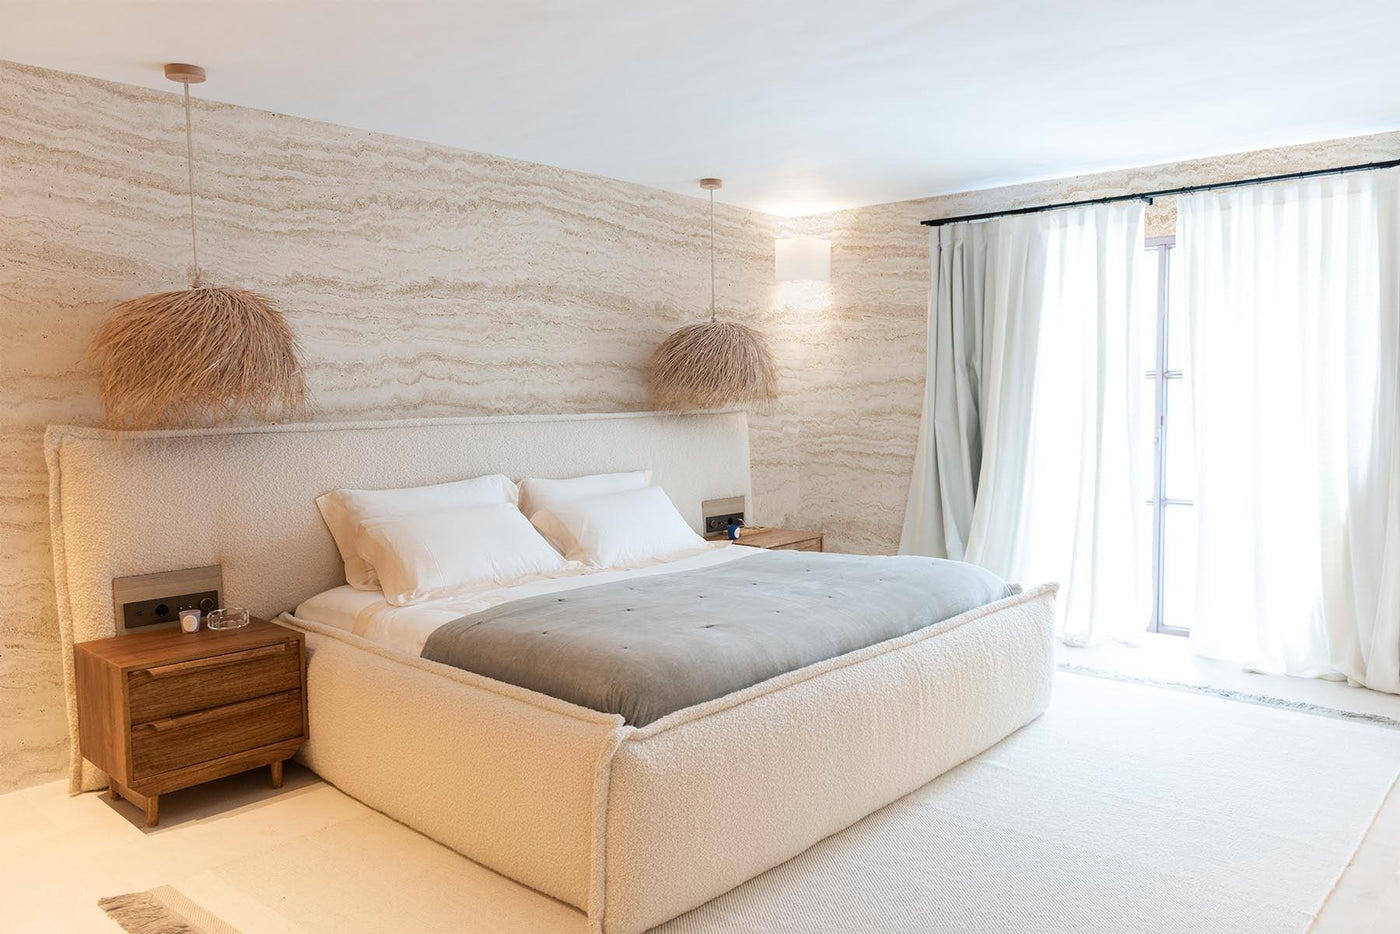 Sandfärgad travertinvägg väggmålning på väggarna i detta moderna sovrum. Vitt golv. Lätt beige säng med vita sängkläder och ljusgrå filt. 